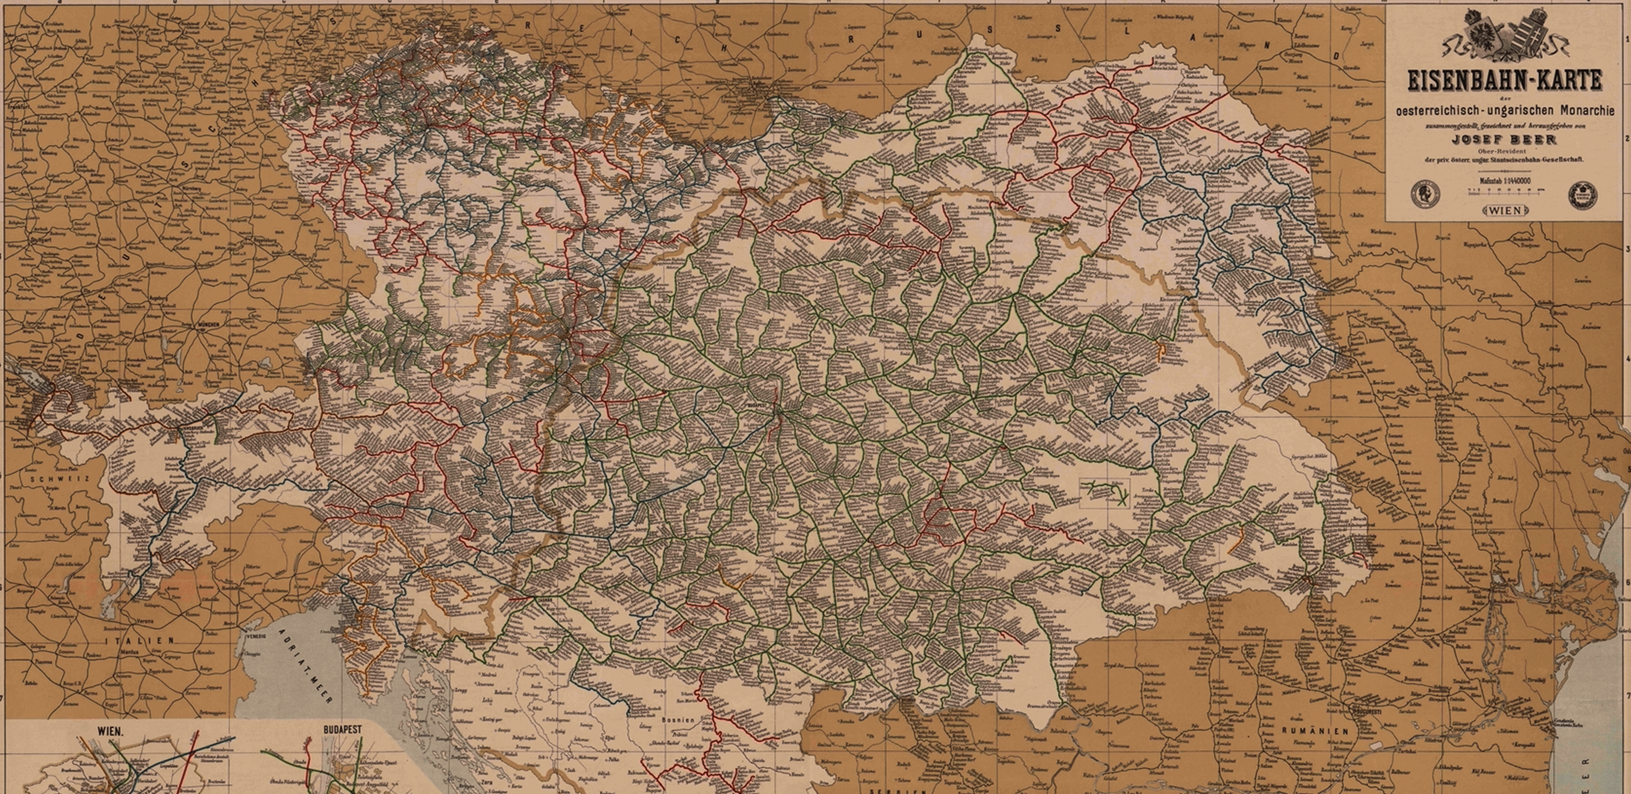 Eisenbahnkarte der österreichischen Monarchie